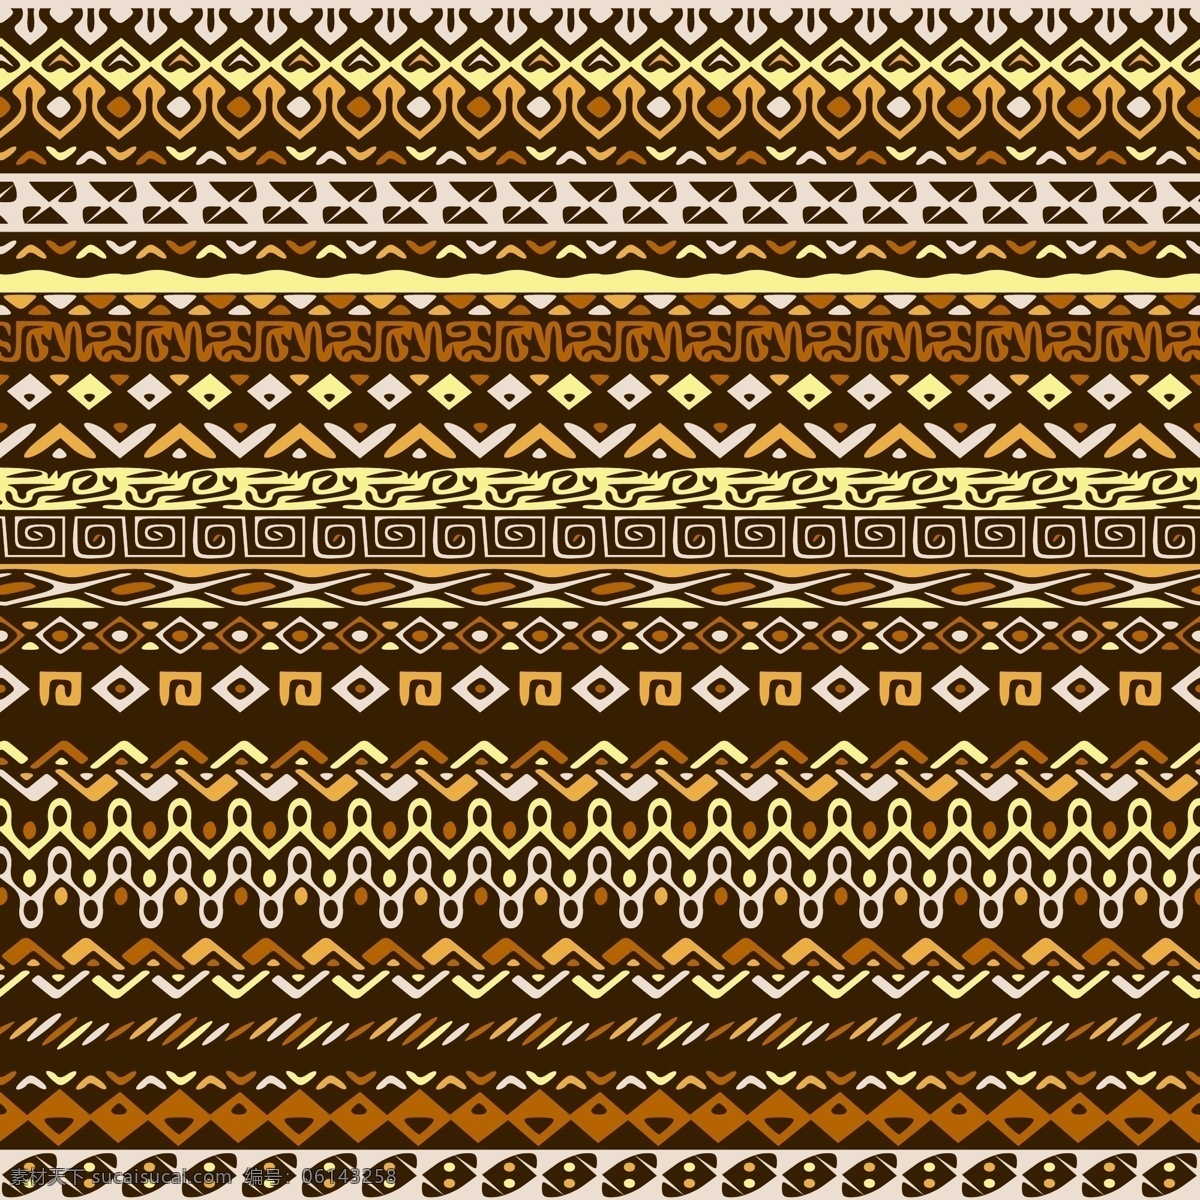 民族 形态 棕色 格局 背景 模式 抽象 装饰 手绘 饰品 印度 部落 非洲 观赏 无缝 古董 纺织品 传统 嬉皮士 阿兹特克